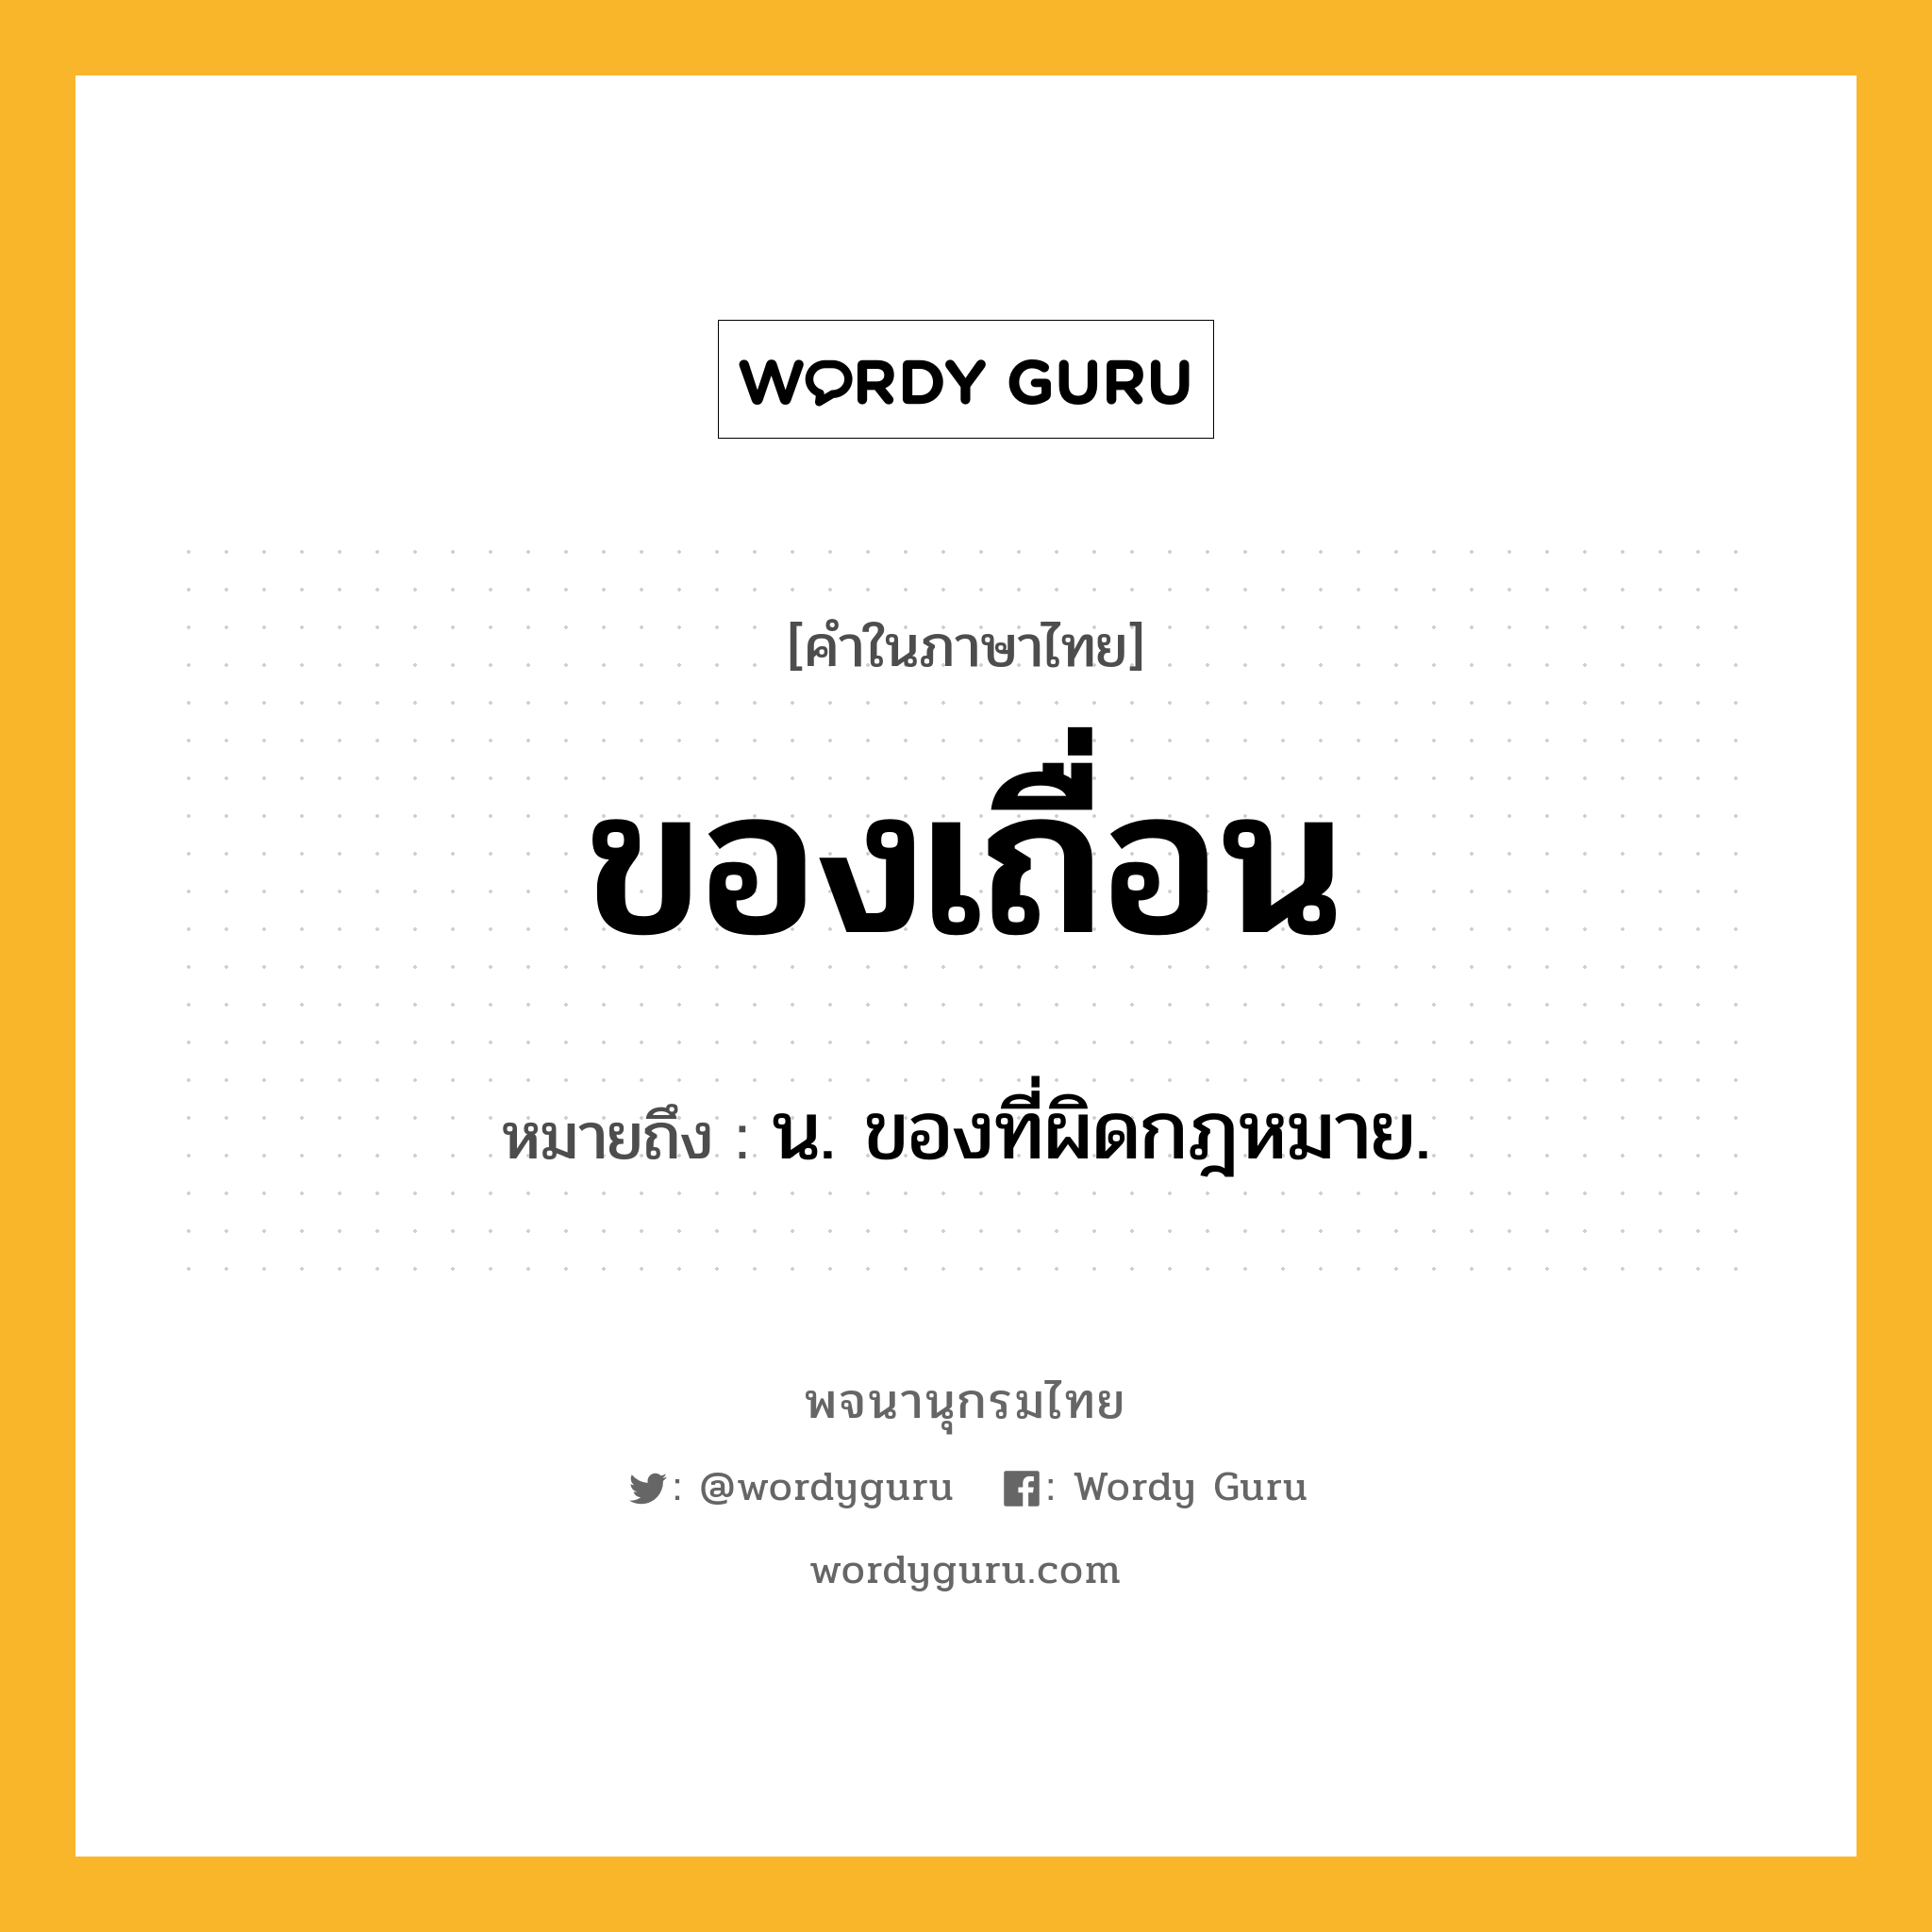 ของเถื่อน หมายถึงอะไร?, คำในภาษาไทย ของเถื่อน หมายถึง น. ของที่ผิดกฎหมาย.